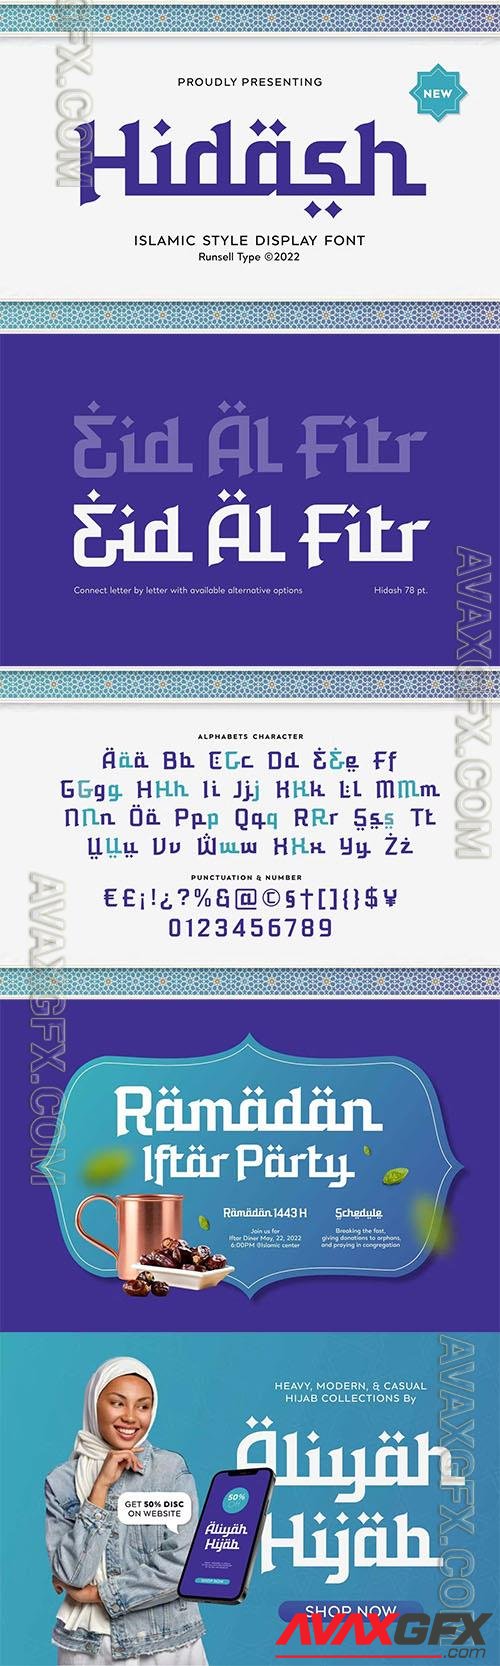 Arabic Font - Hidash Z8P924P